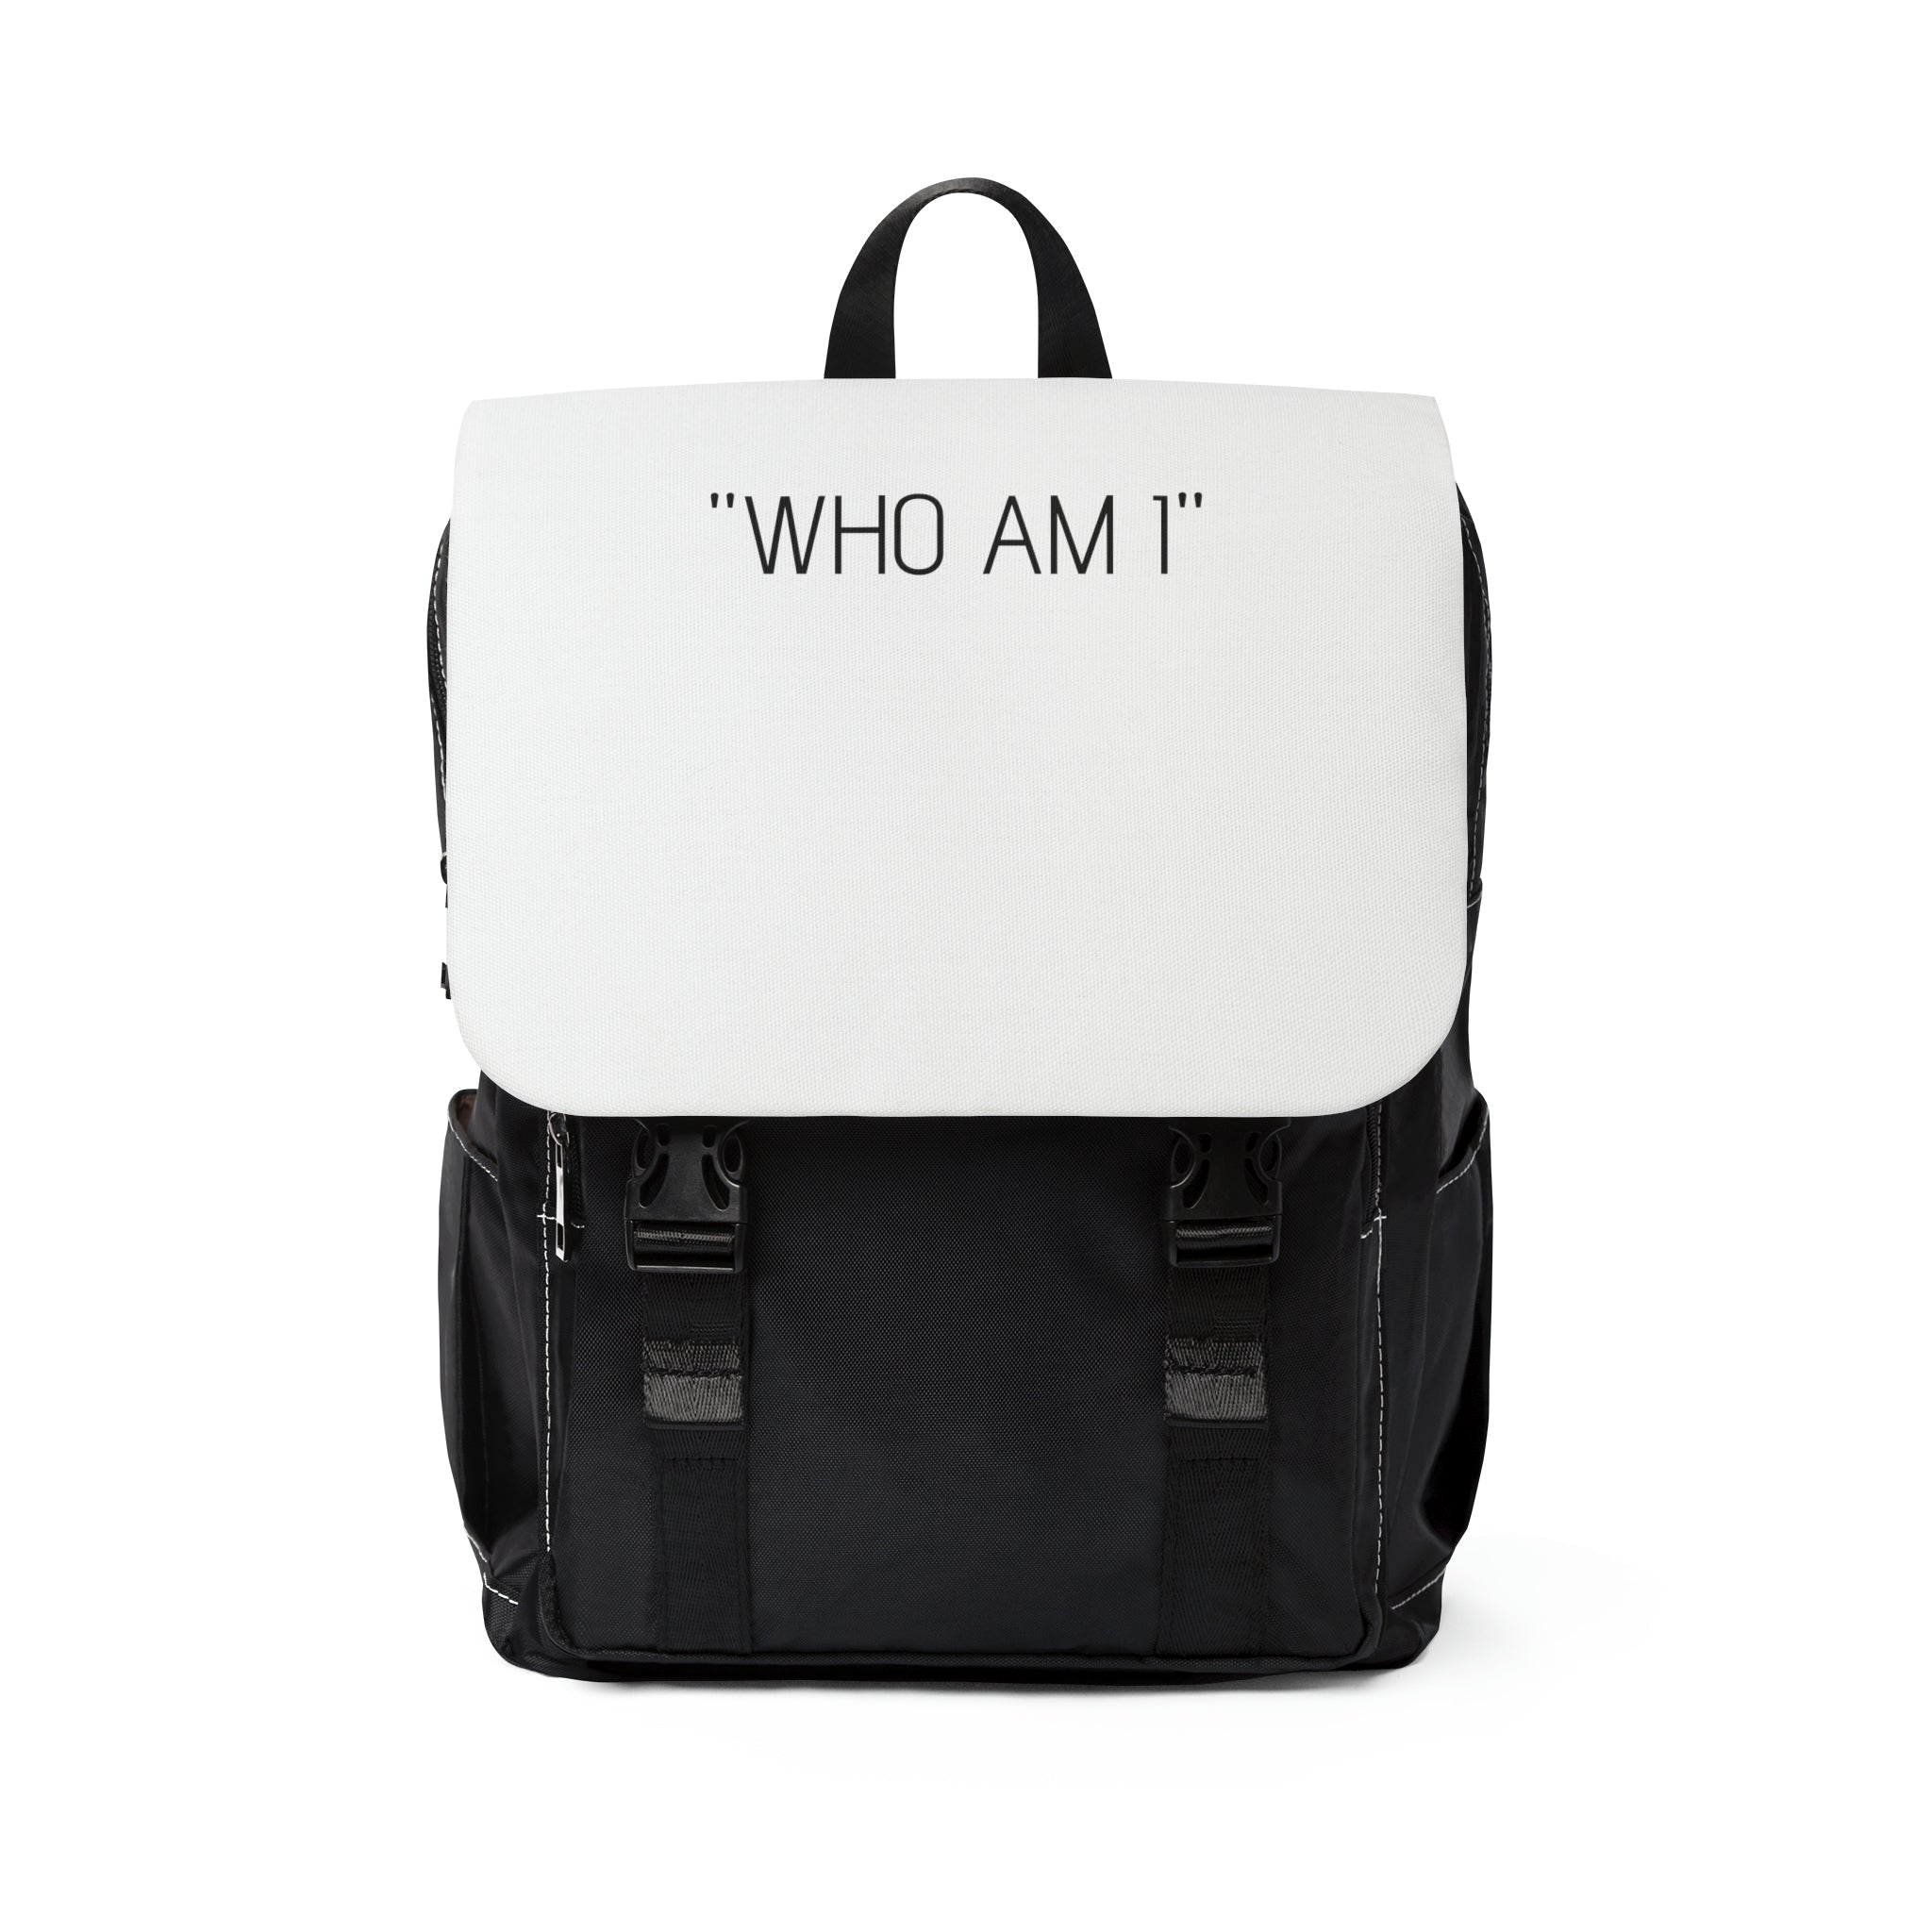 "WHO AM I" Motivational Unisex Casual Shoulder Backpack